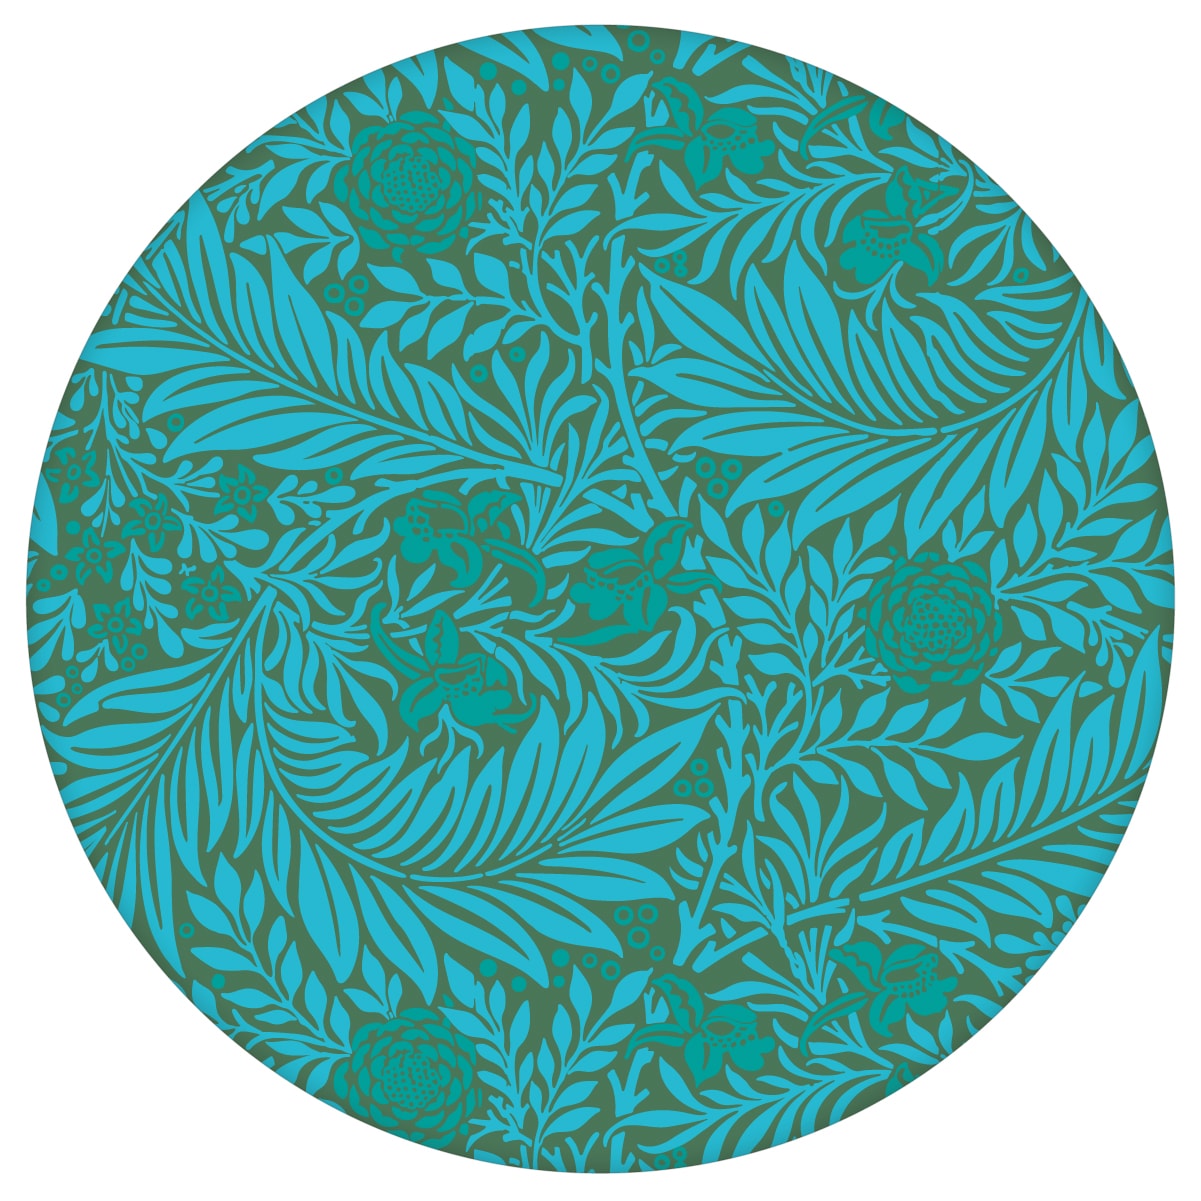 Edle William Morris Jugendstil Tapete "Délice florale", türkis grüne Vlies Tapete, großer Rapport Wanddeko für Wohnzimmeraus dem GMM-BERLIN.com Sortiment: grüne Tapete zur Raumgestaltung: #00177 #blumen #Blumentapete #gruen #Grüne Tapeten #Jugendstil #Natur #ornamente #Ranken #Retro #türkis #vintage #WilliamMorris #Wohnzimmer für individuelles Interiordesign